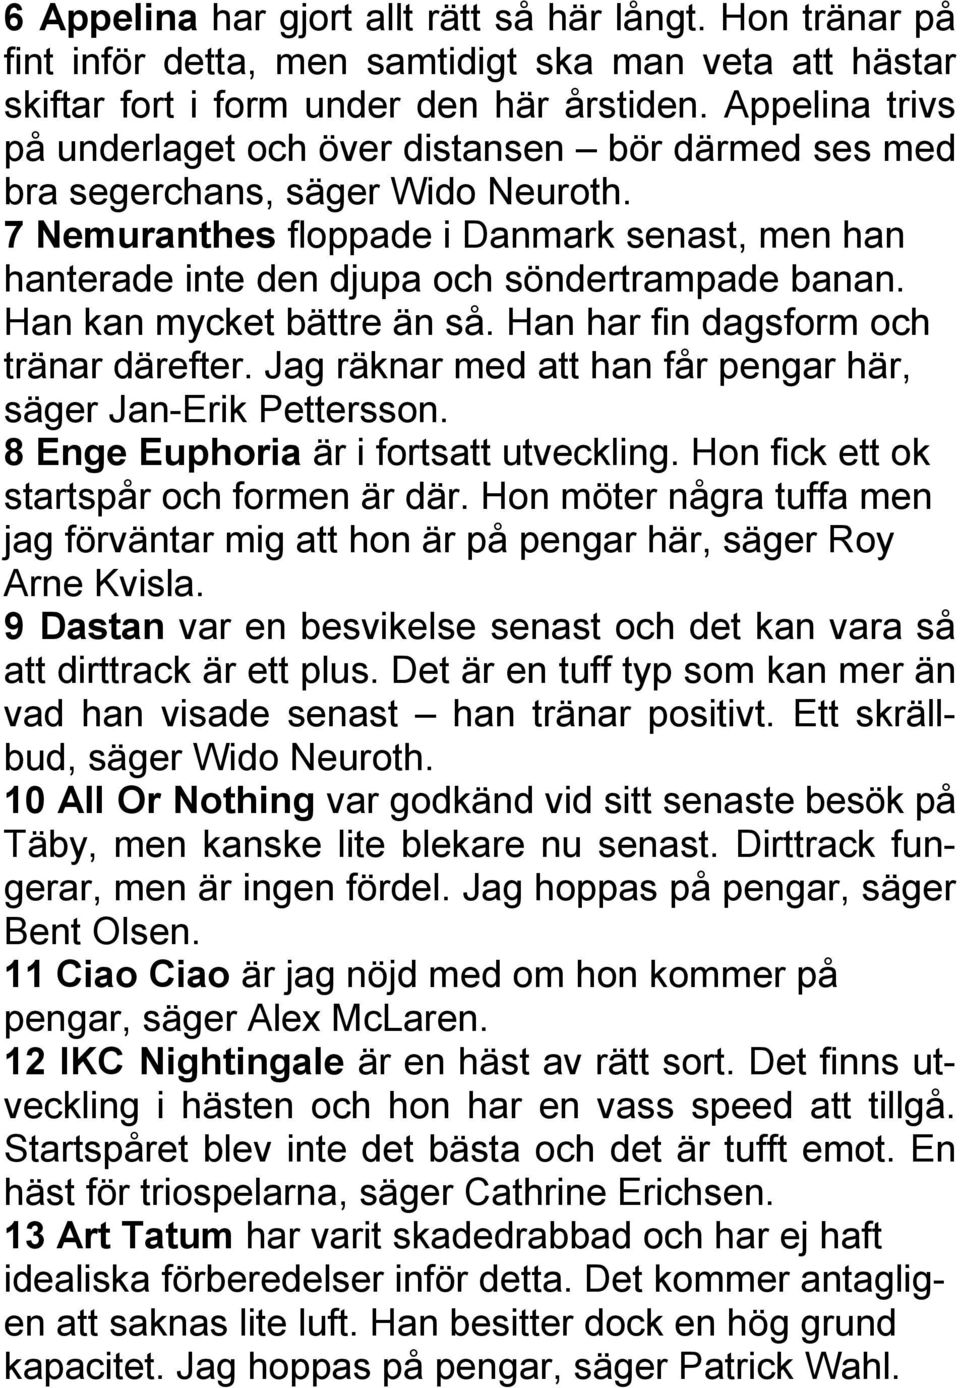 7 Nemuranthes floppade i Danmark senast, men han hanterade inte den djupa och söndertrampade banan. Han kan mycket bättre än så. Han har fin dagsform och tränar därefter.